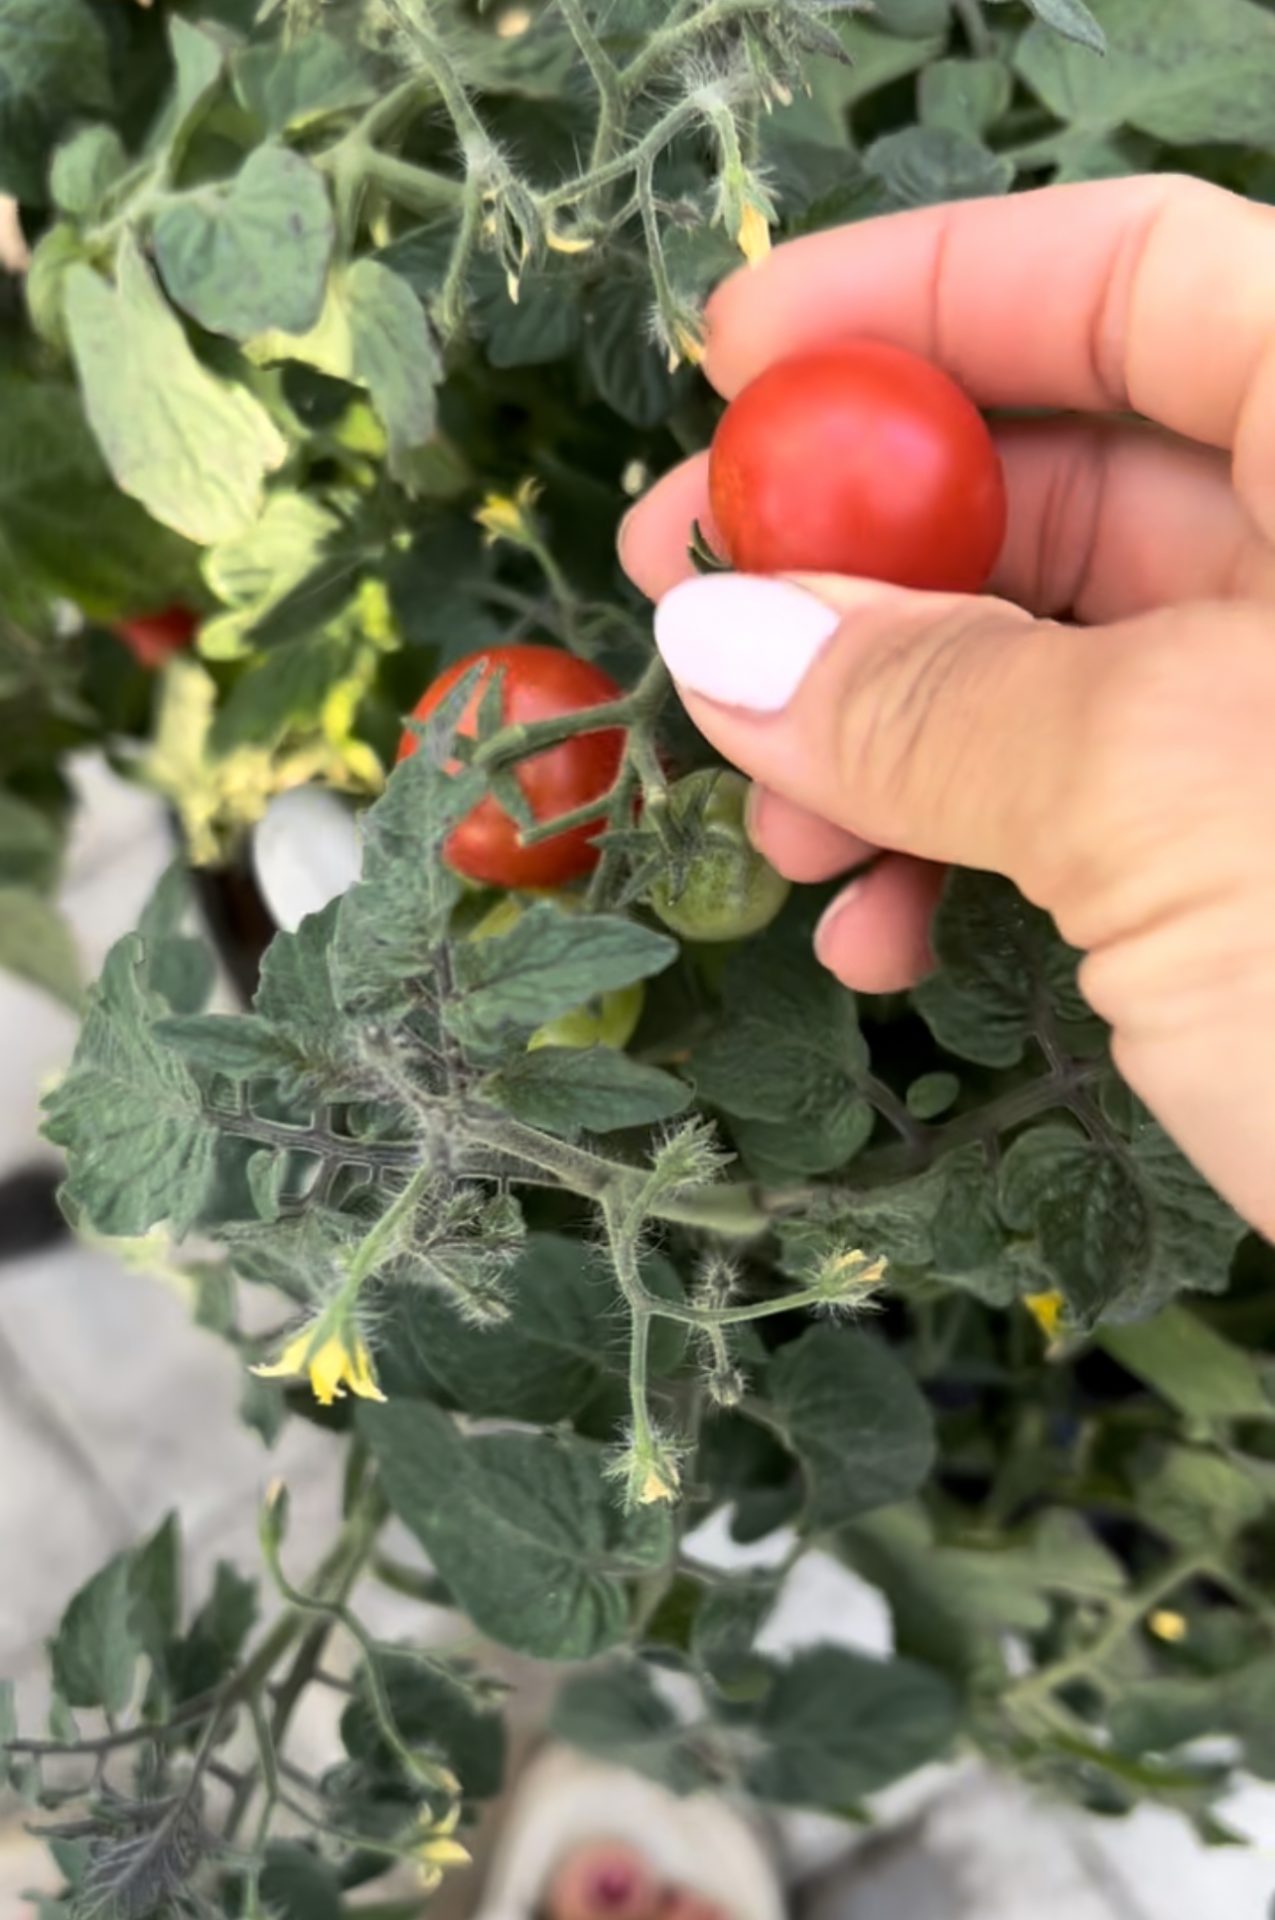 Odla tomater i växthus ifrån frö till skörd